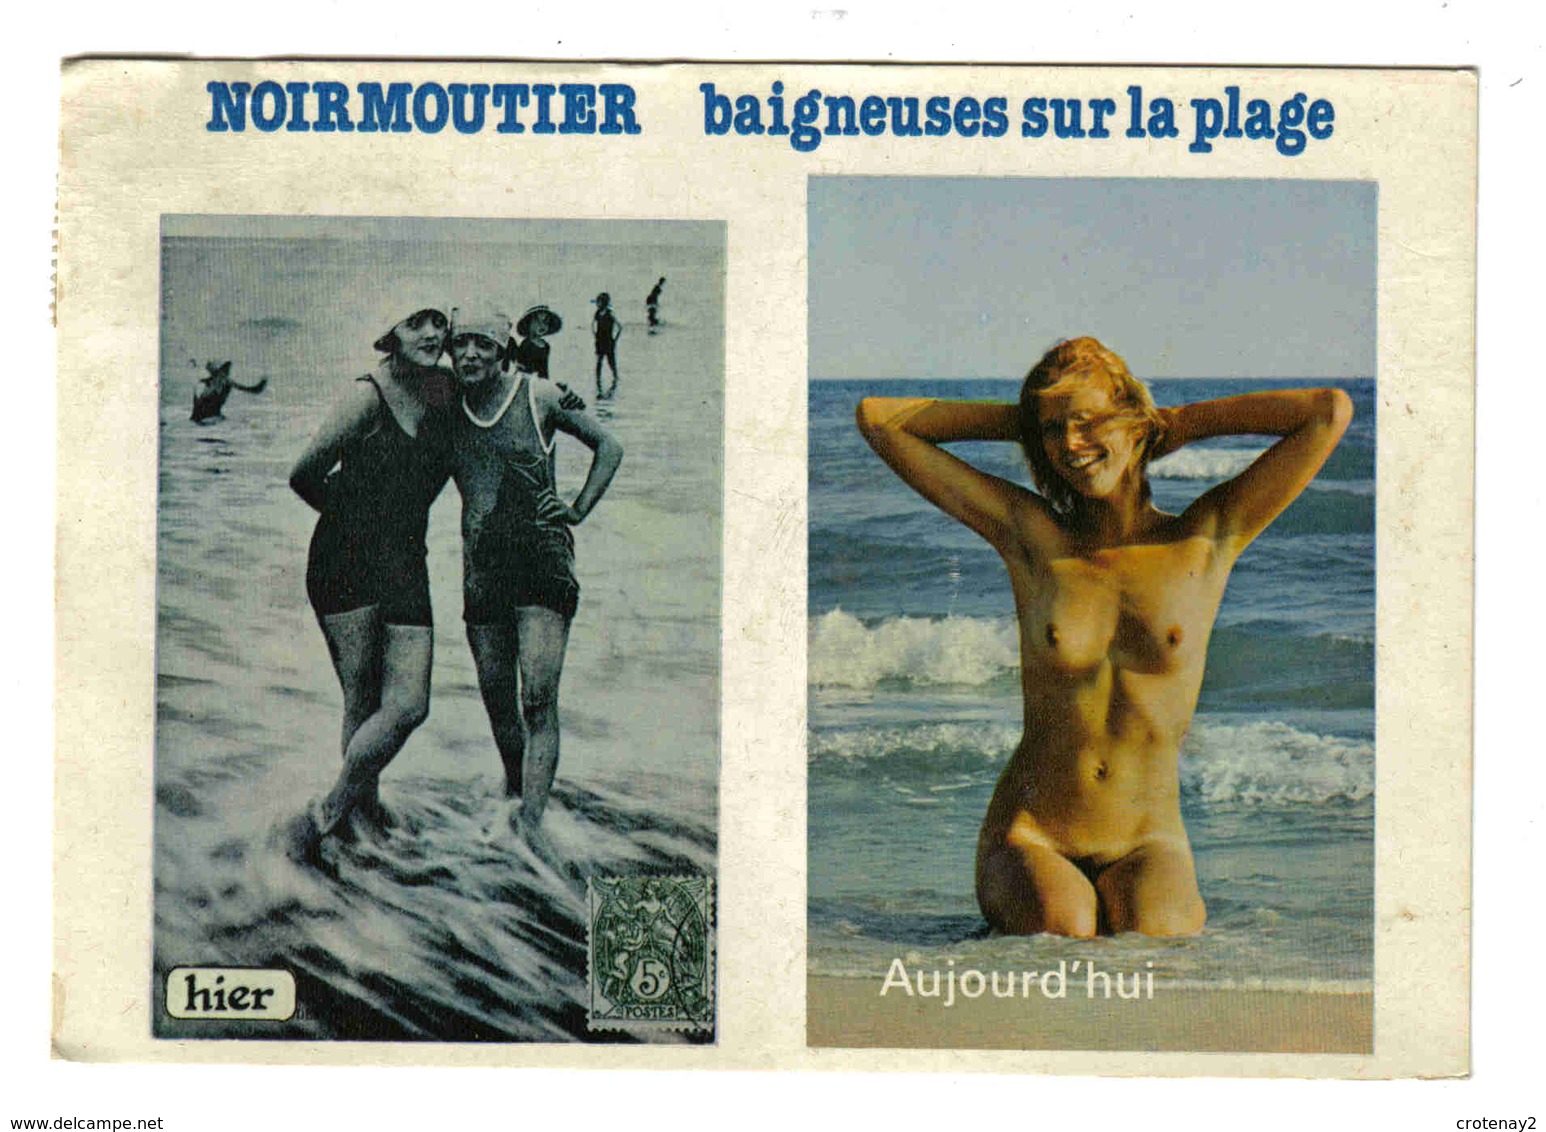 85 Ile De Noirmoutier Baigneuses Hier Maillots Aujourd'hui Sans Maillot Seins Nus Carte De 1982 - Ile De Noirmoutier